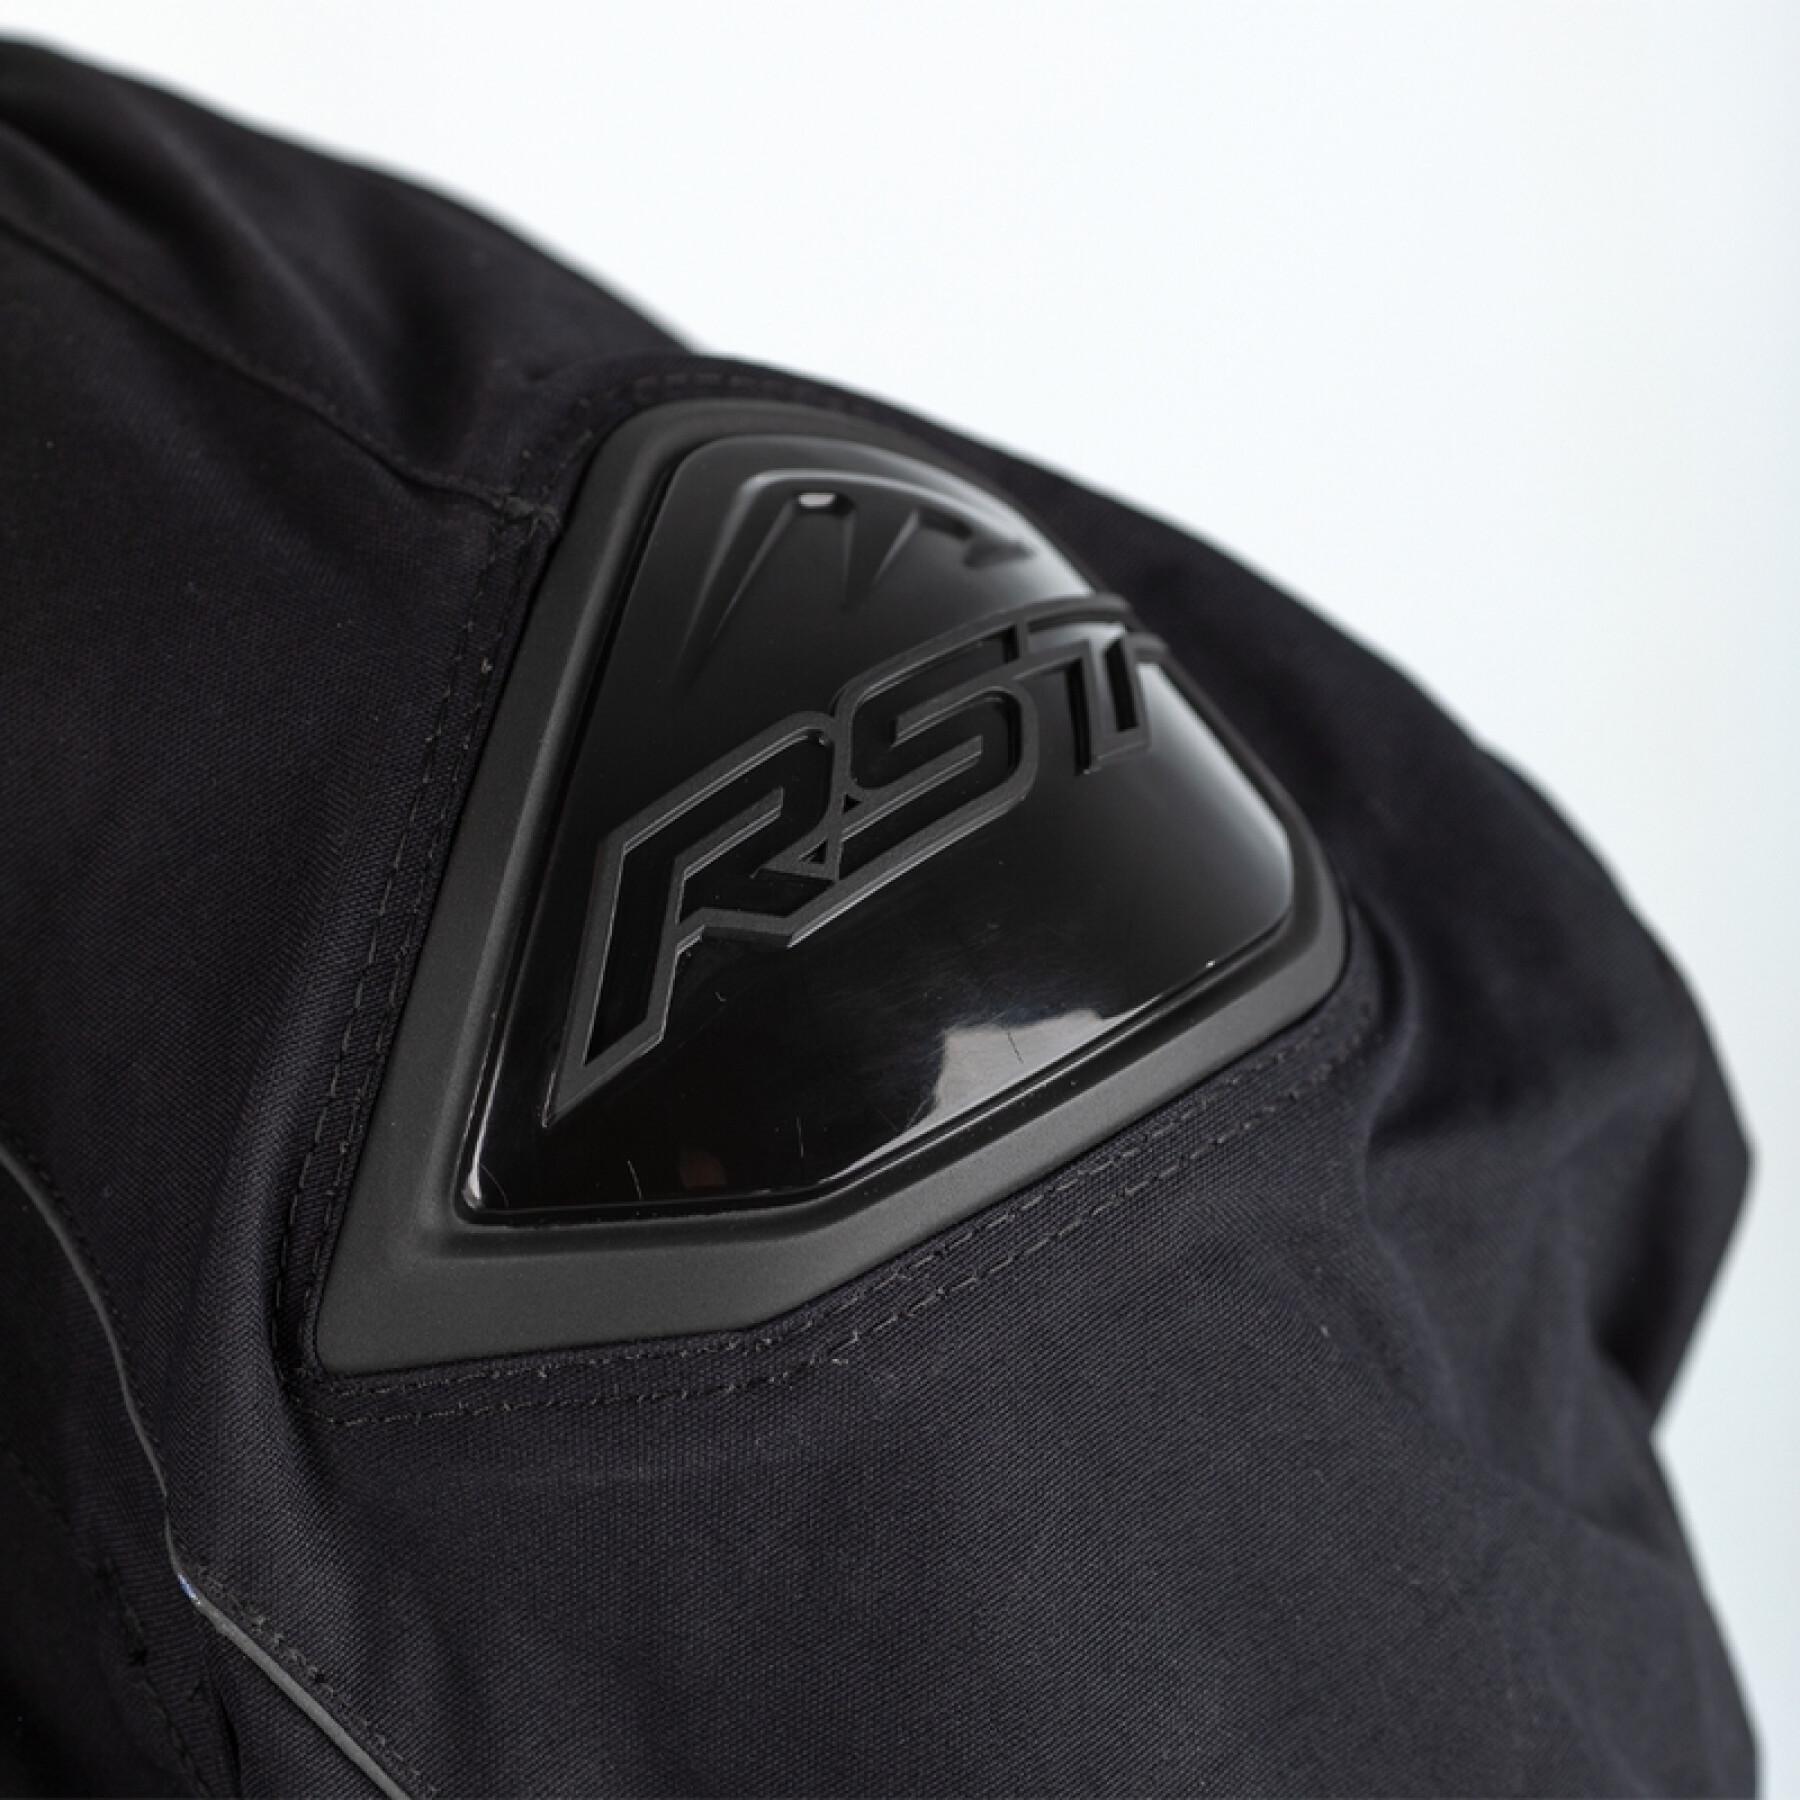 Motorcycle jacket RST Sabre Airbag